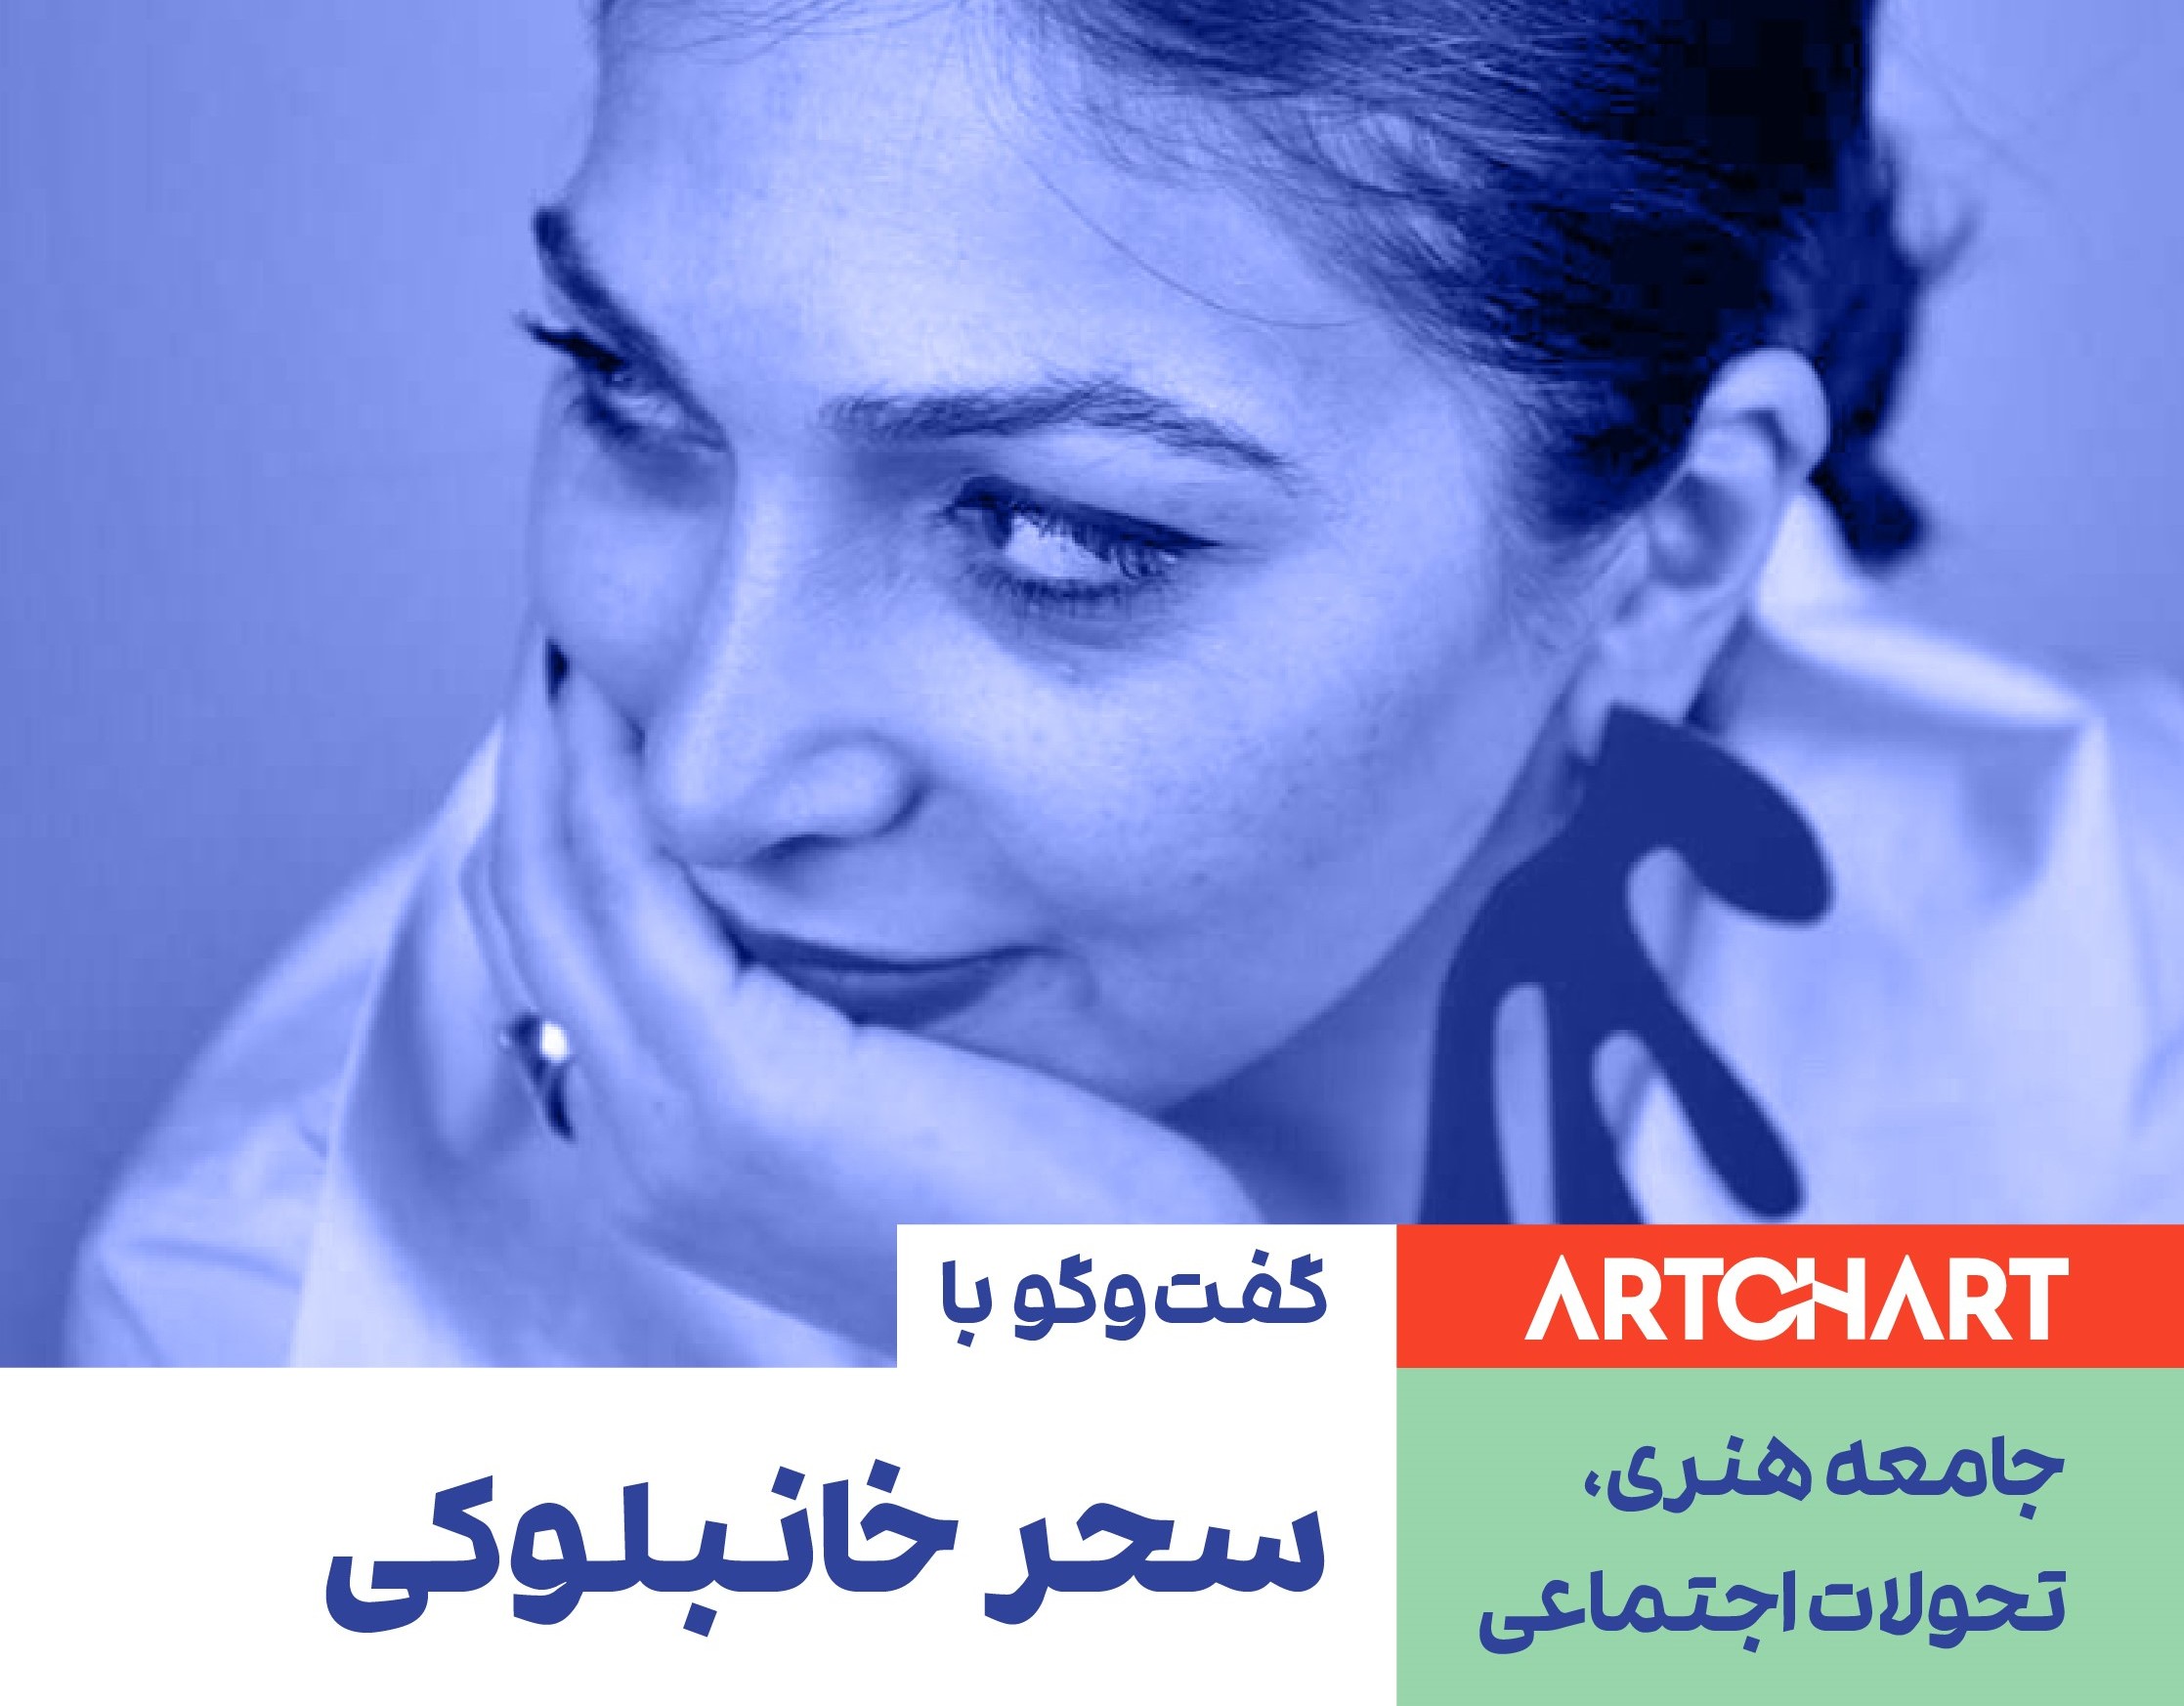 Sahar Khanbolouki in a conversation with Artchart